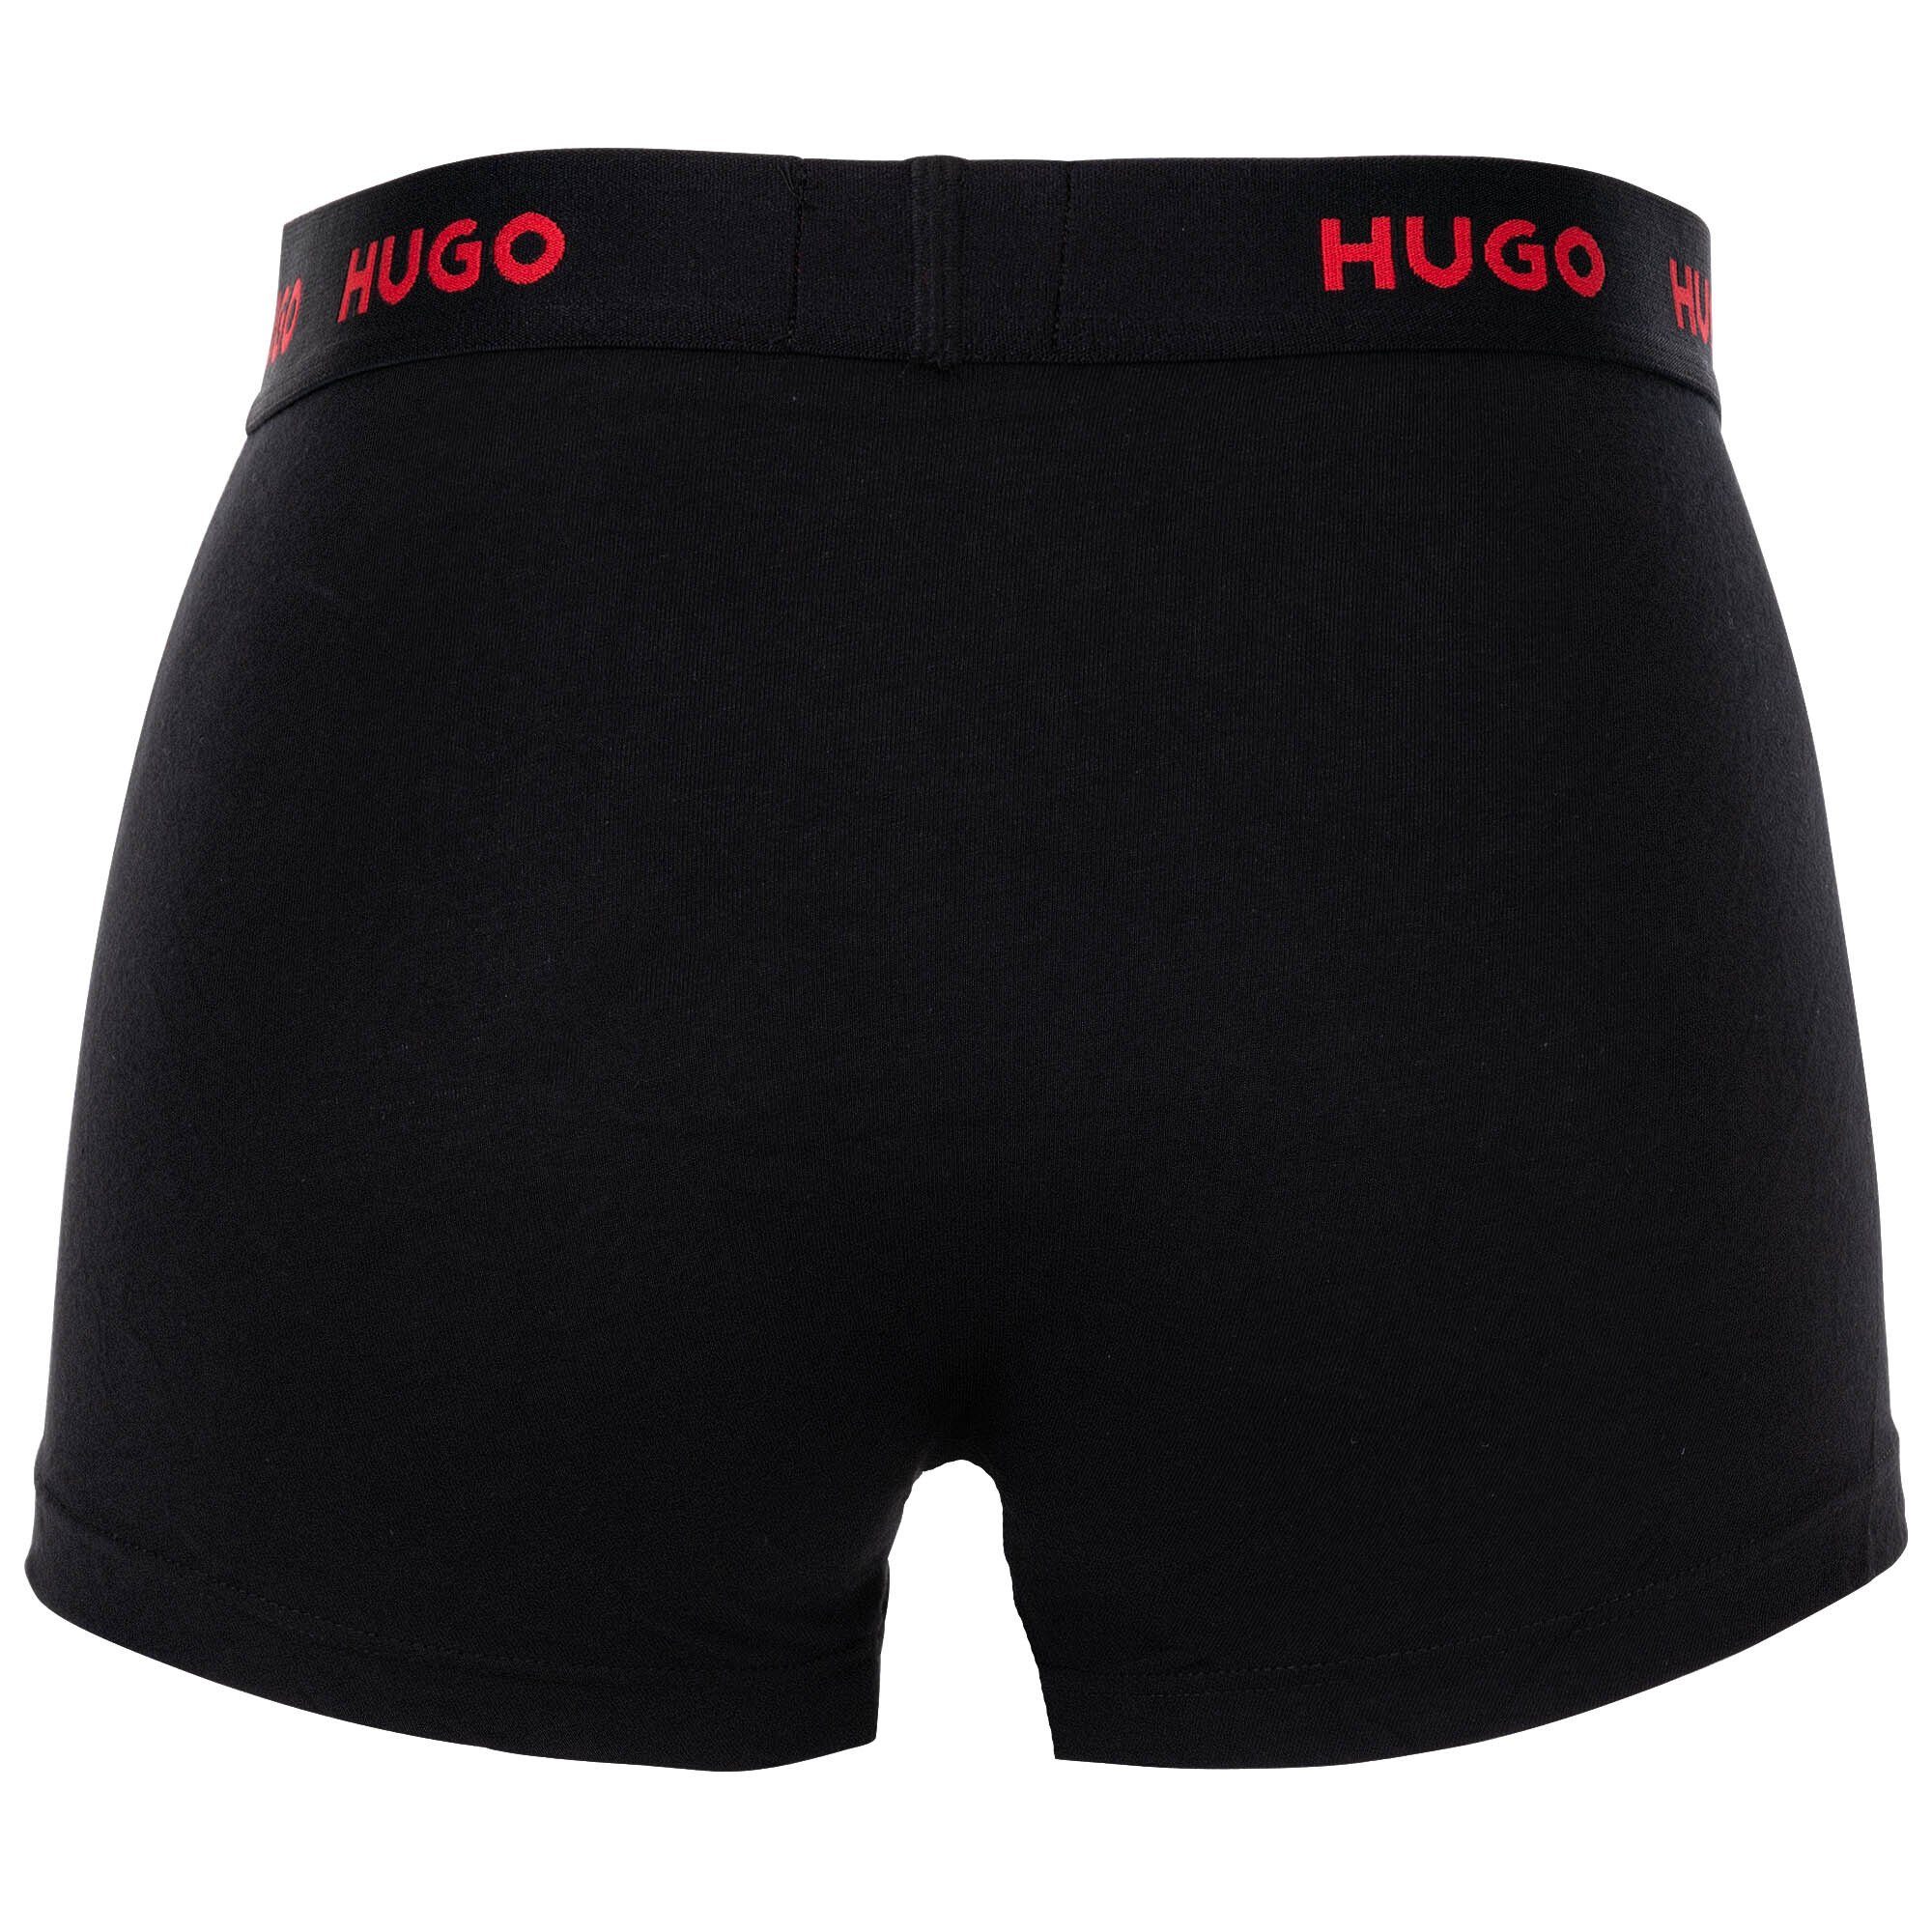 Rot/Weiß/Schwarz - 3er HUGO Shorts, Herren Triplet Pack Boxer Boxer Trunks